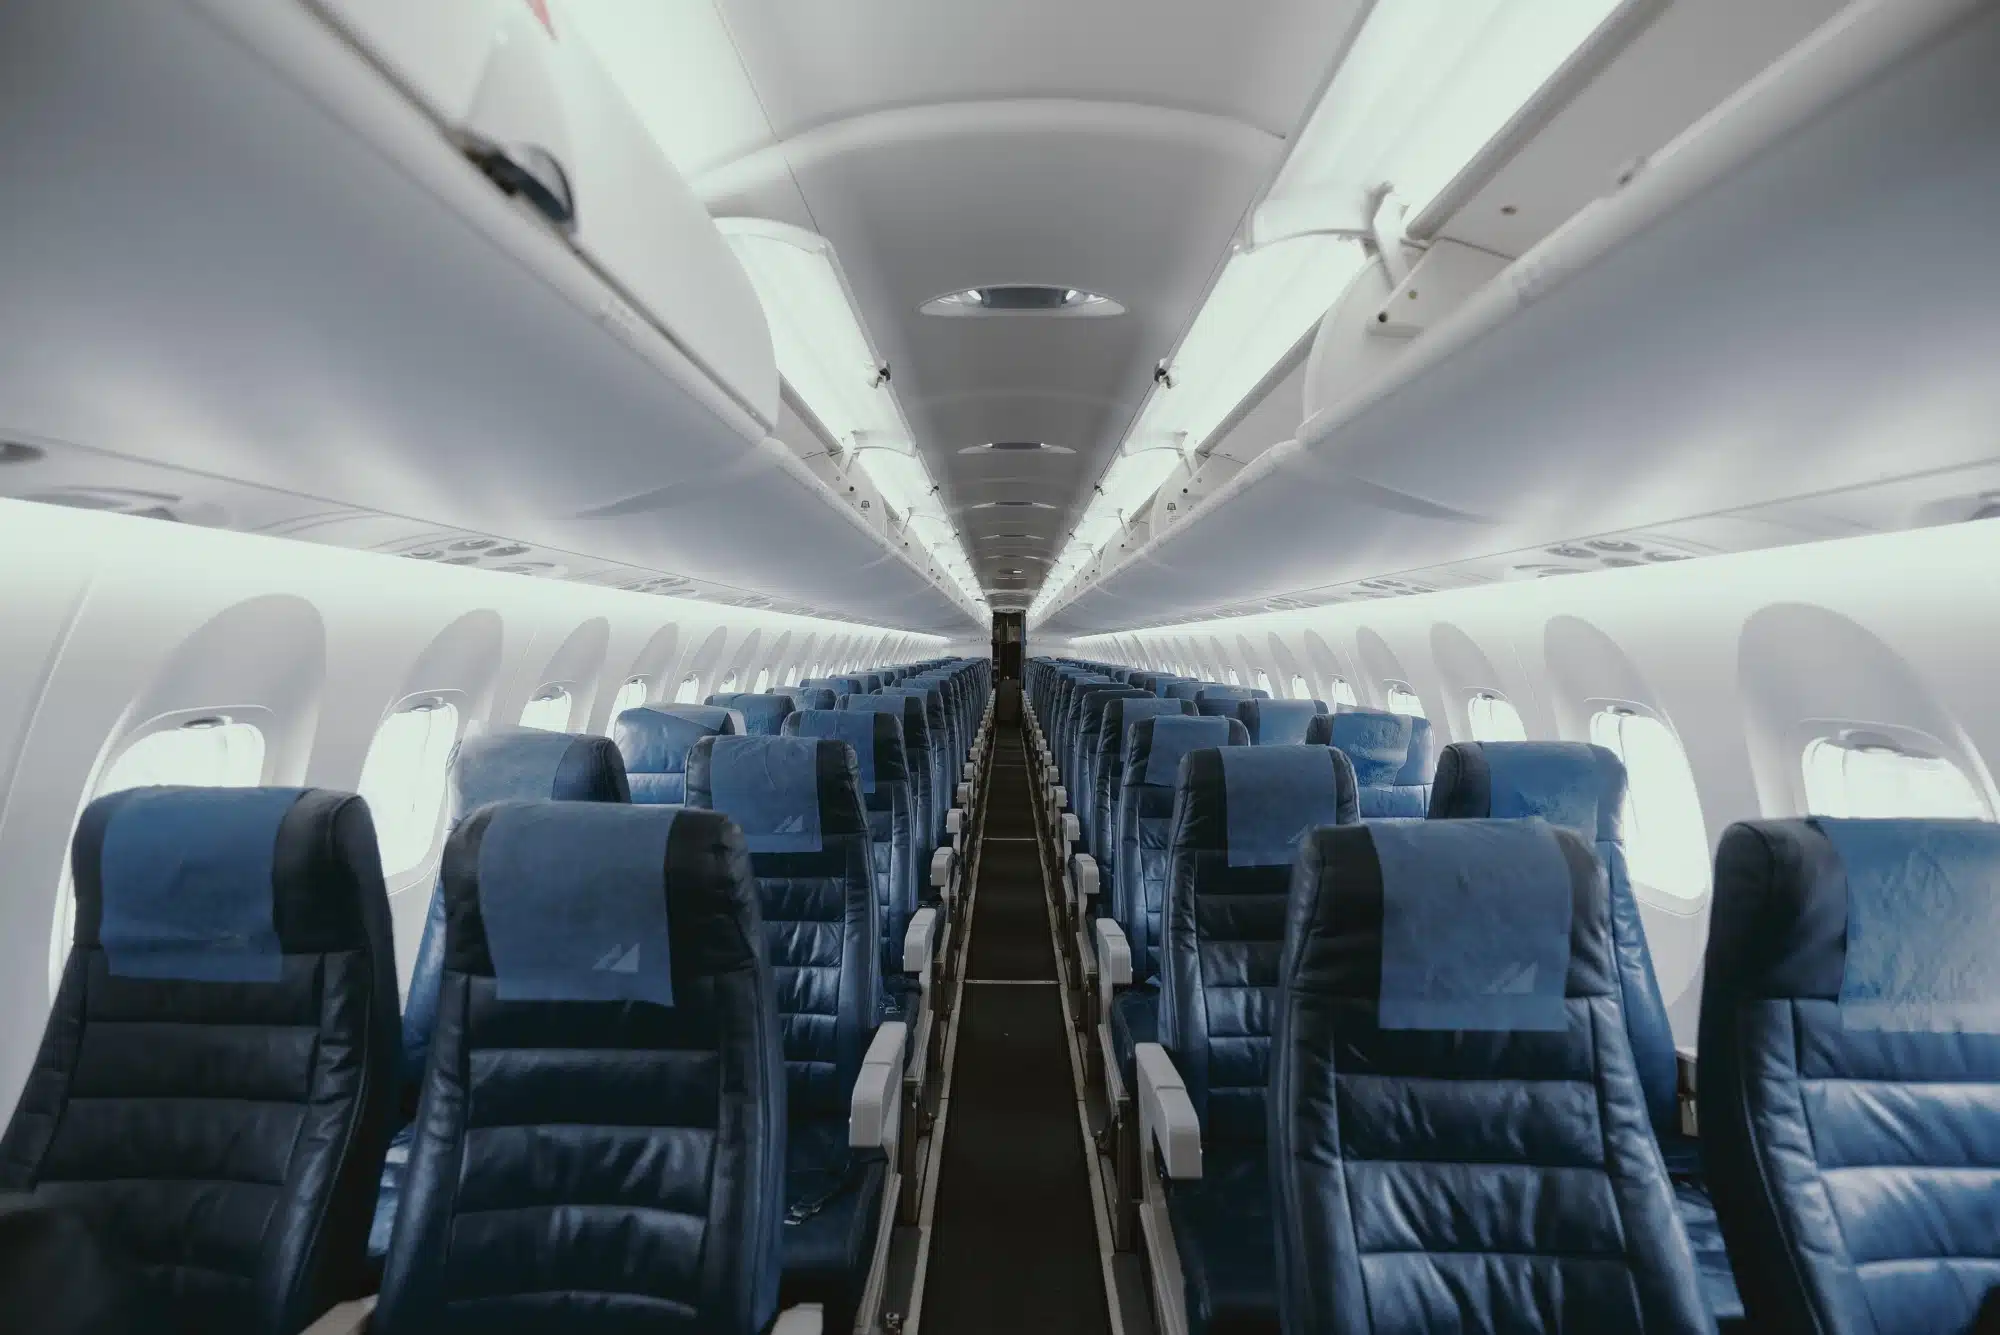 Inside an empty plane.